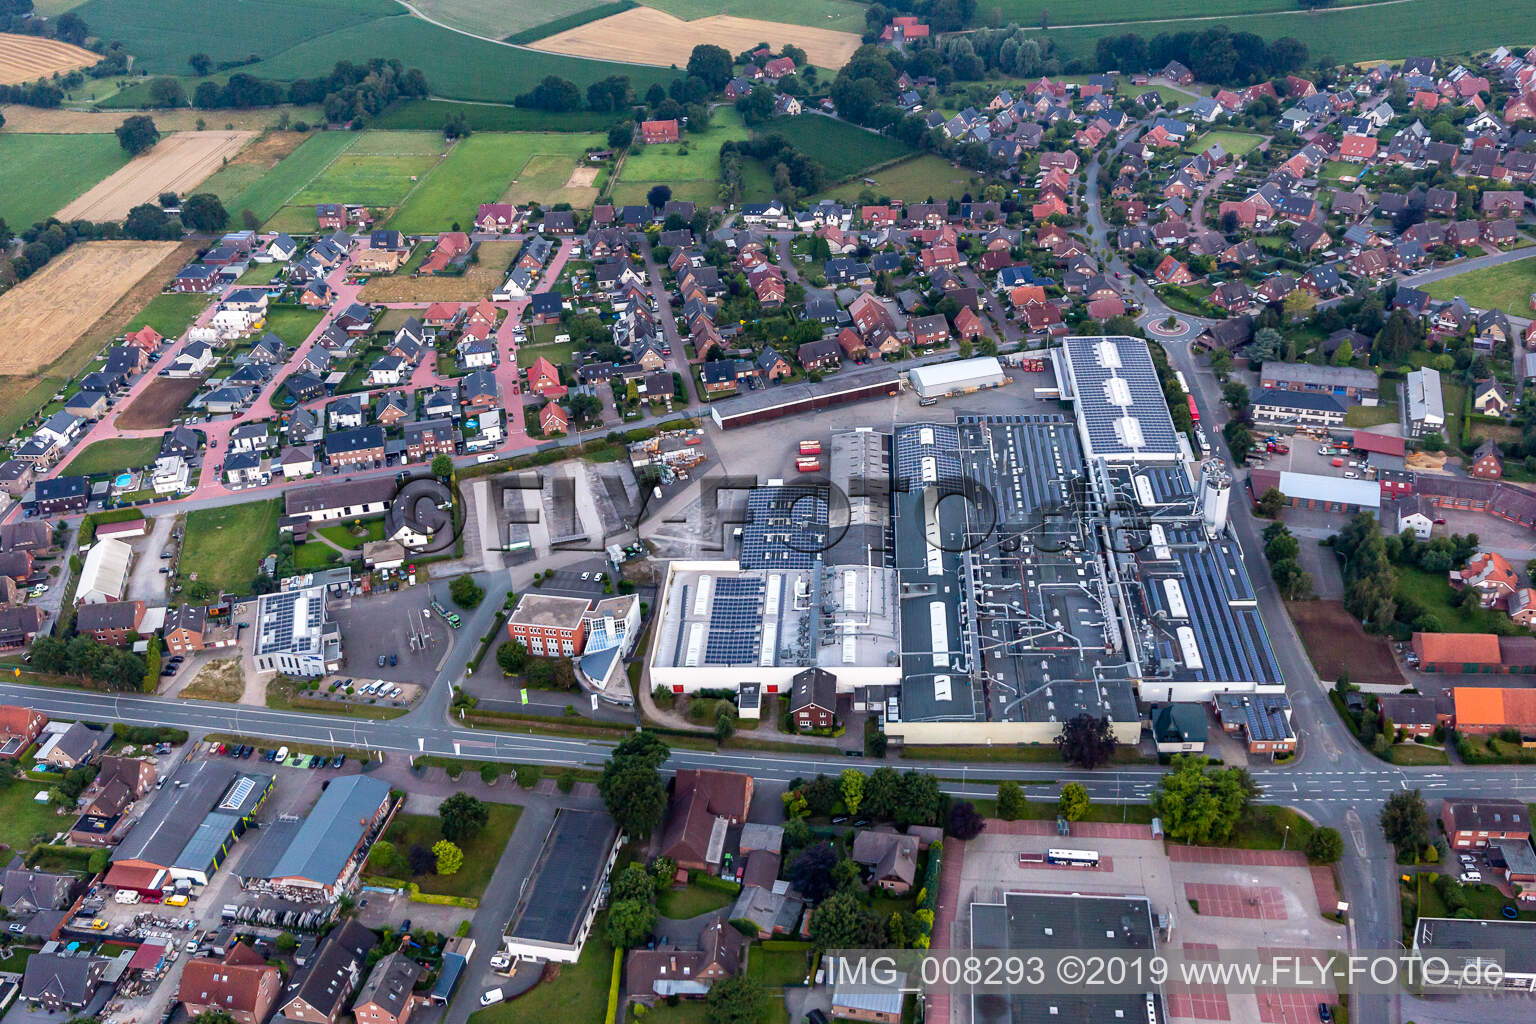 Schwering door factory in Groß Reken in the state North Rhine-Westphalia, Germany